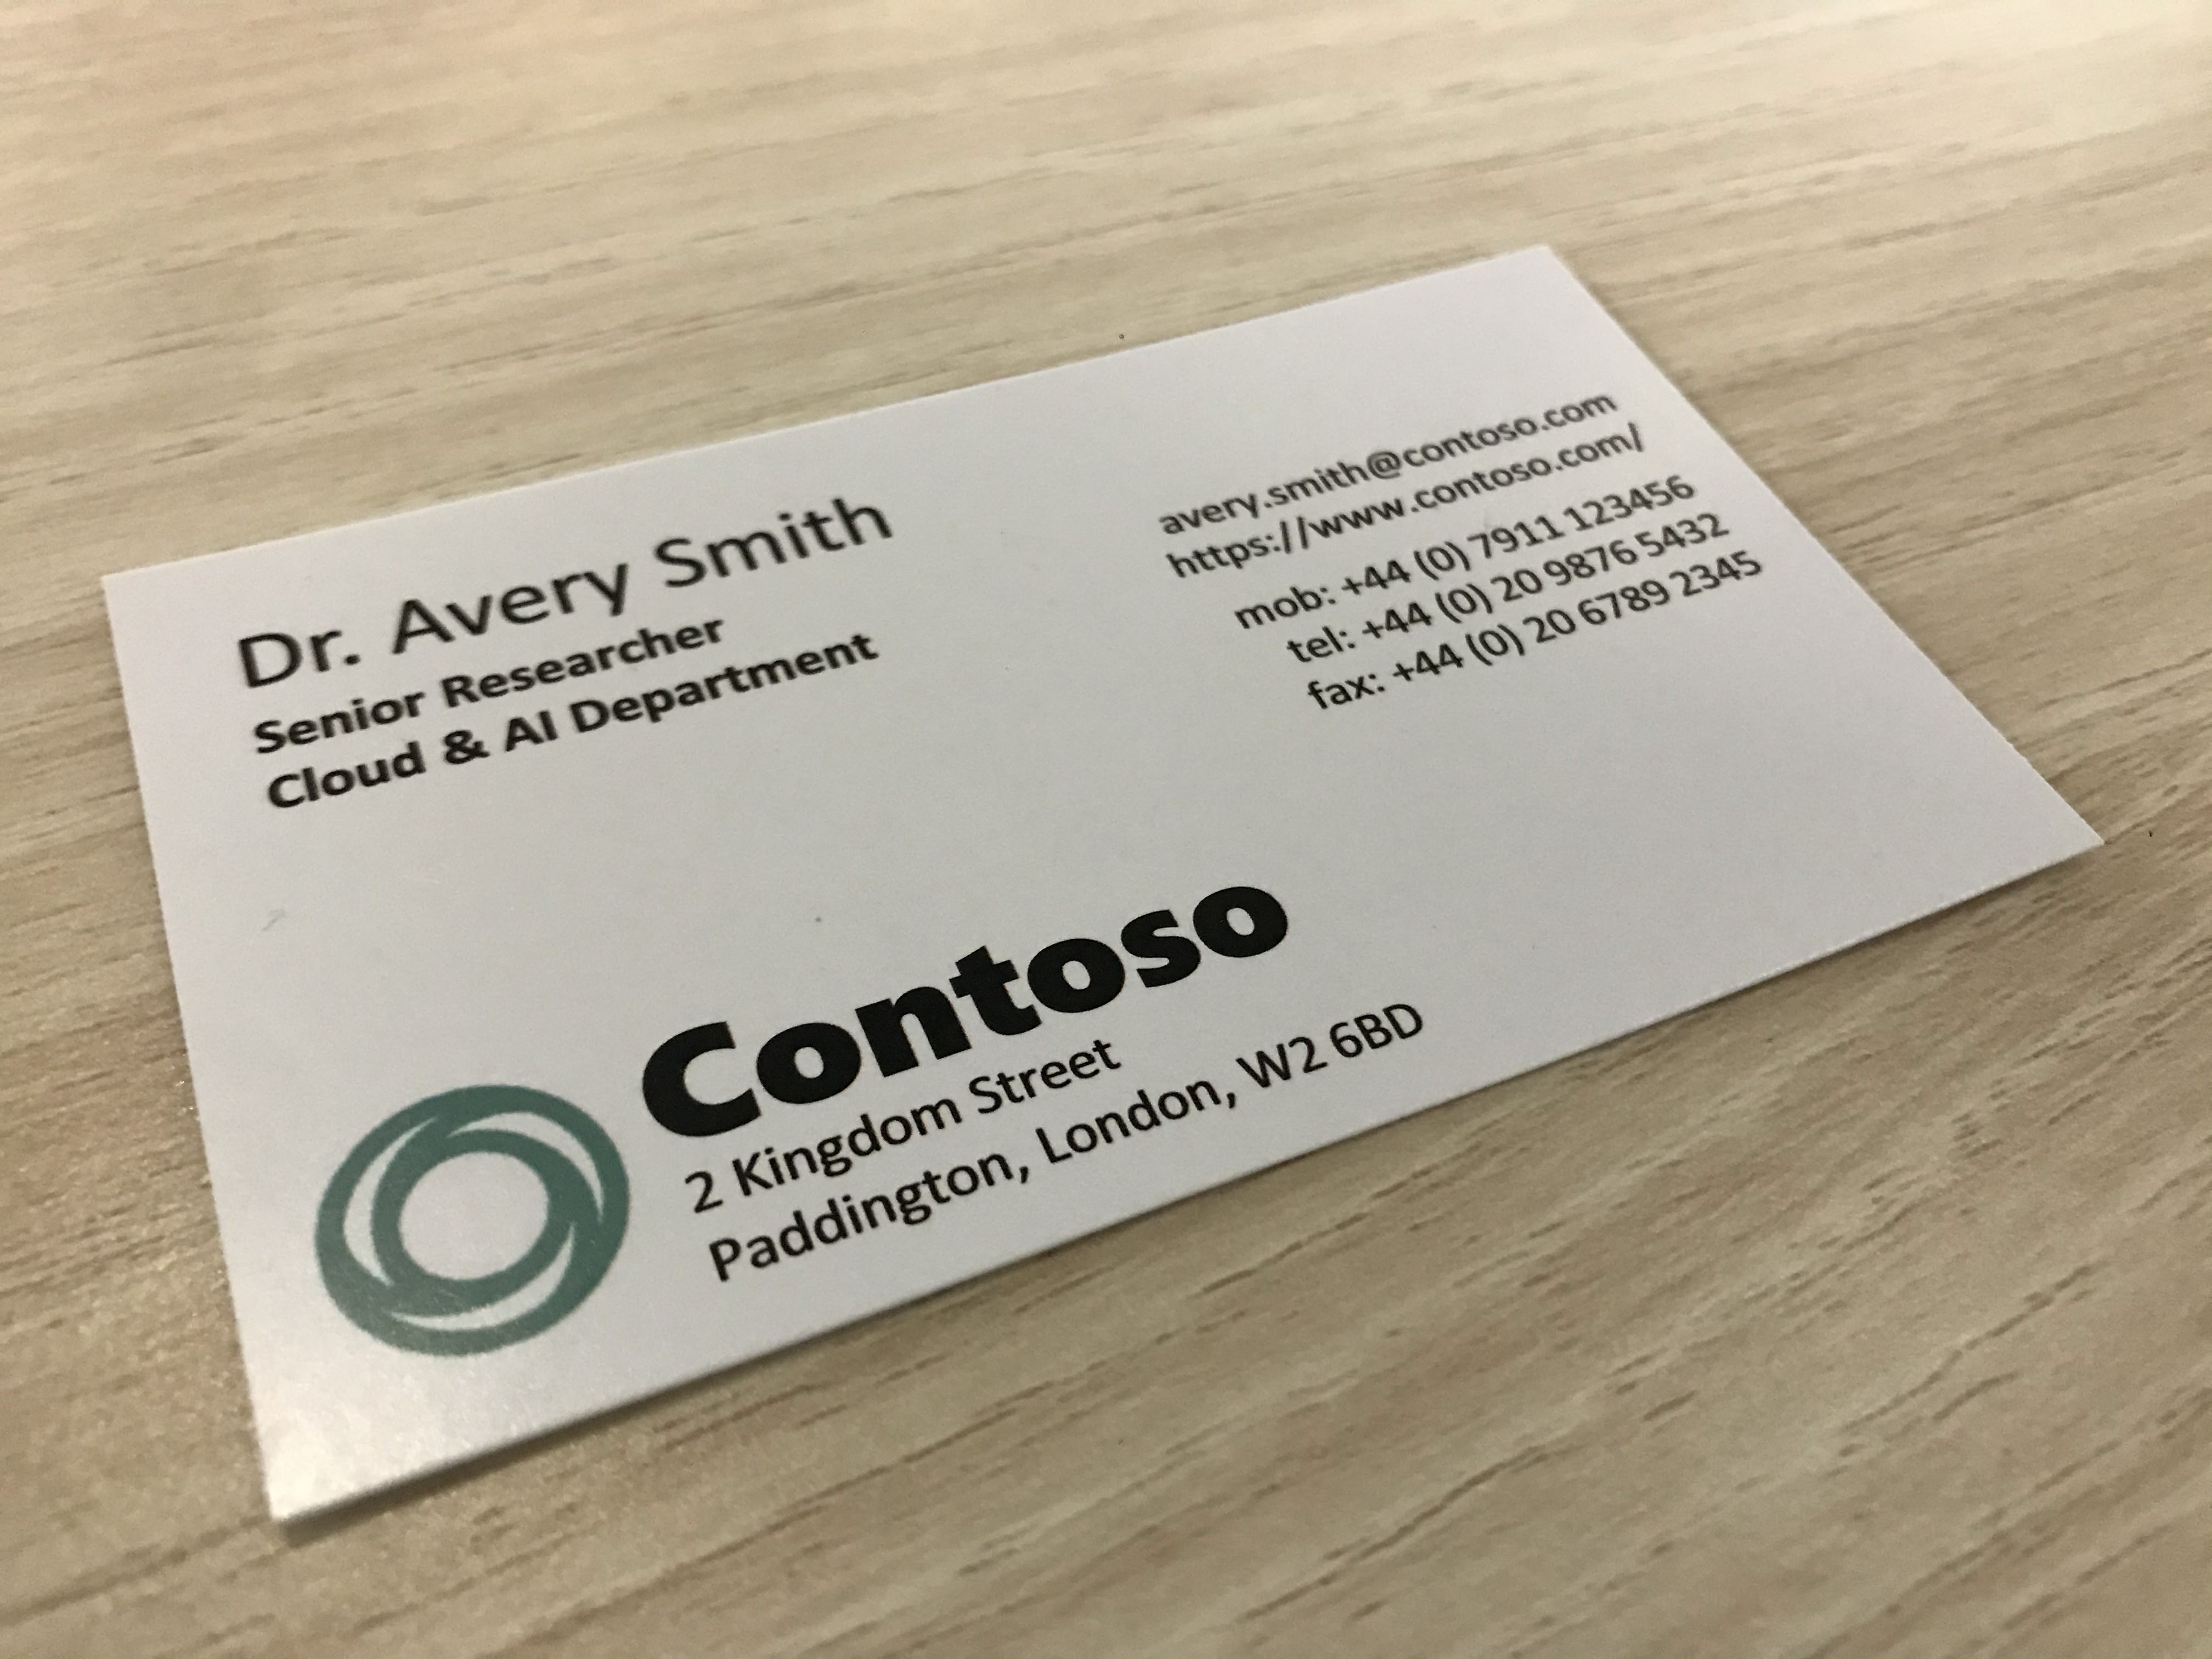 Foto visar ett visitkort från ett företag som heter Contoso.